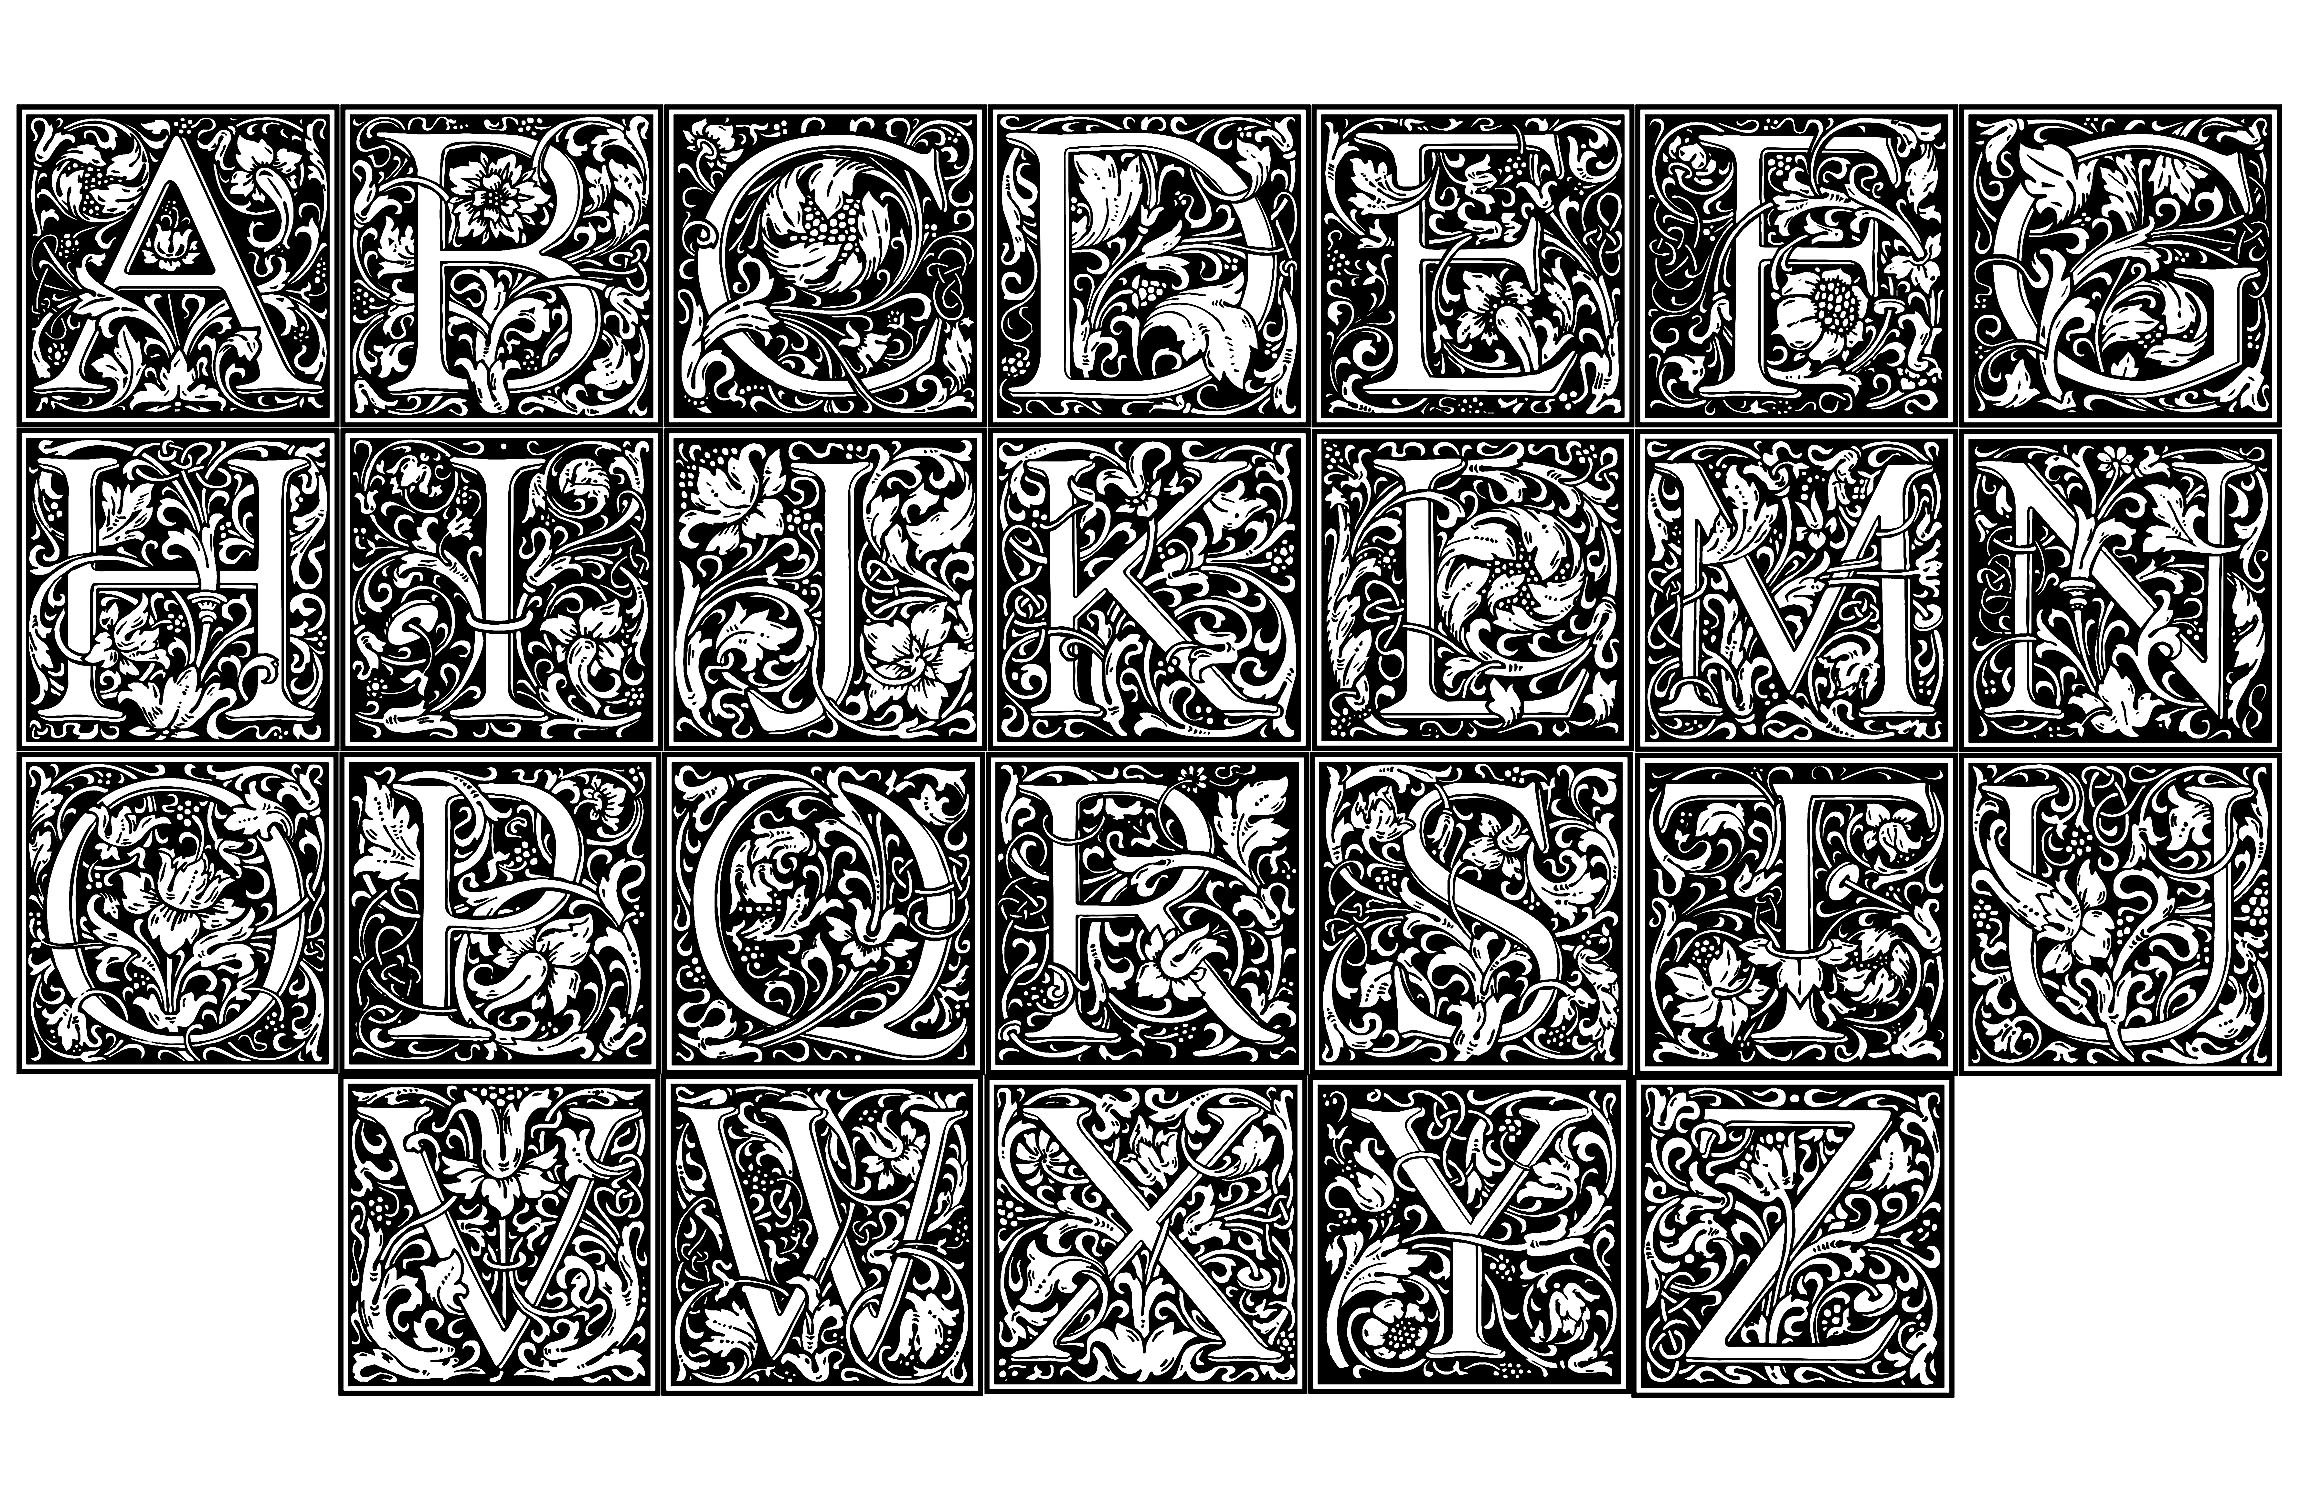 Um alfabeto inteiro para colorir, criado a partir de ilustrações do artista inglês William Morris (1834 - 1896). Cada letra do alfabeto é embelezada com arte típica